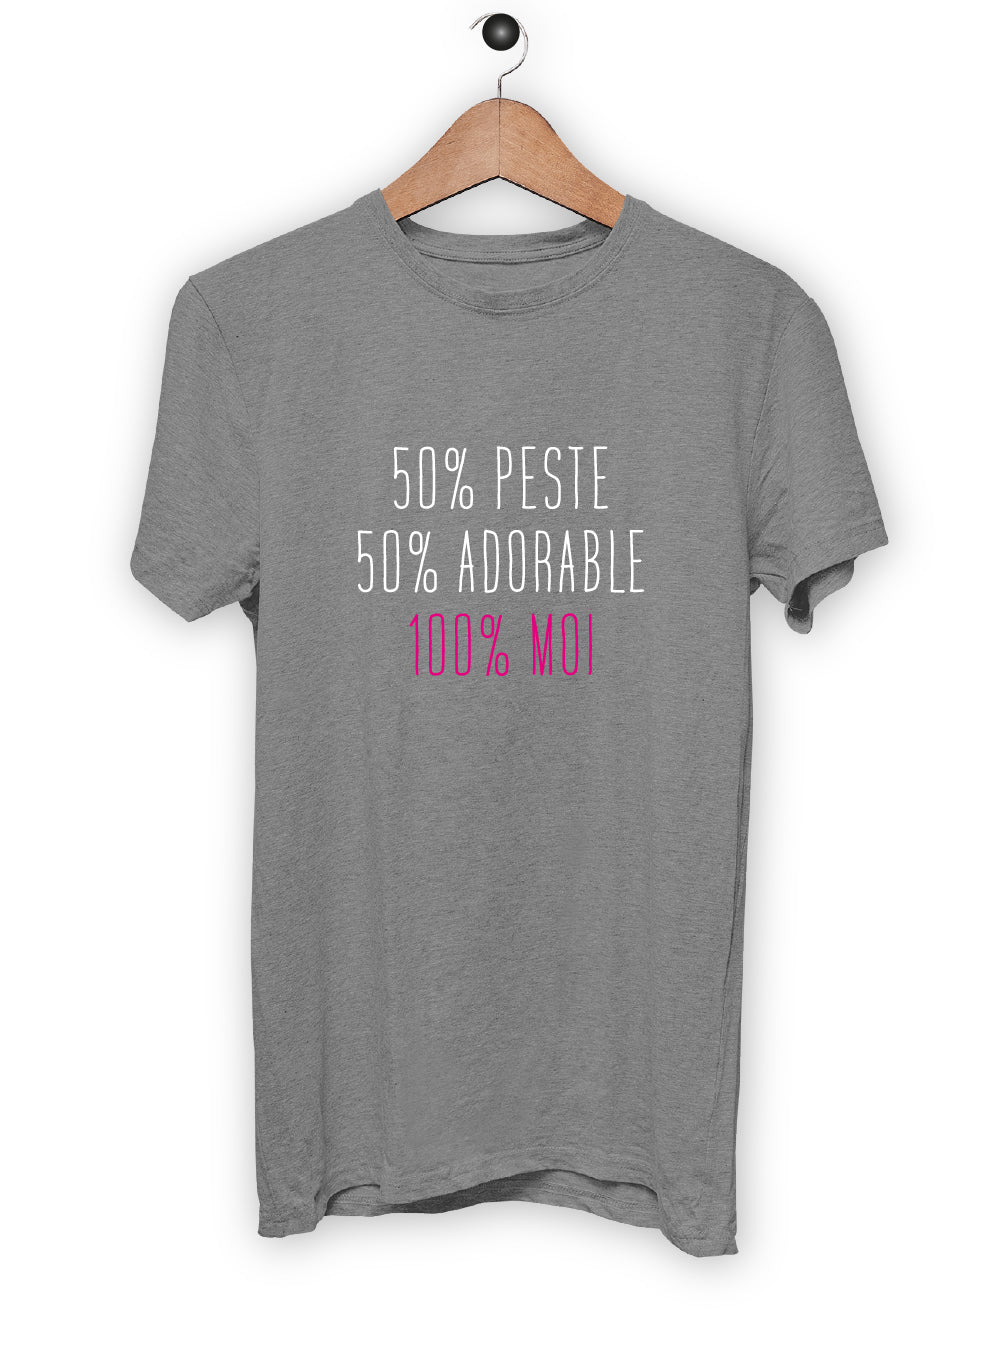 T-Shirt "50% PESTE"